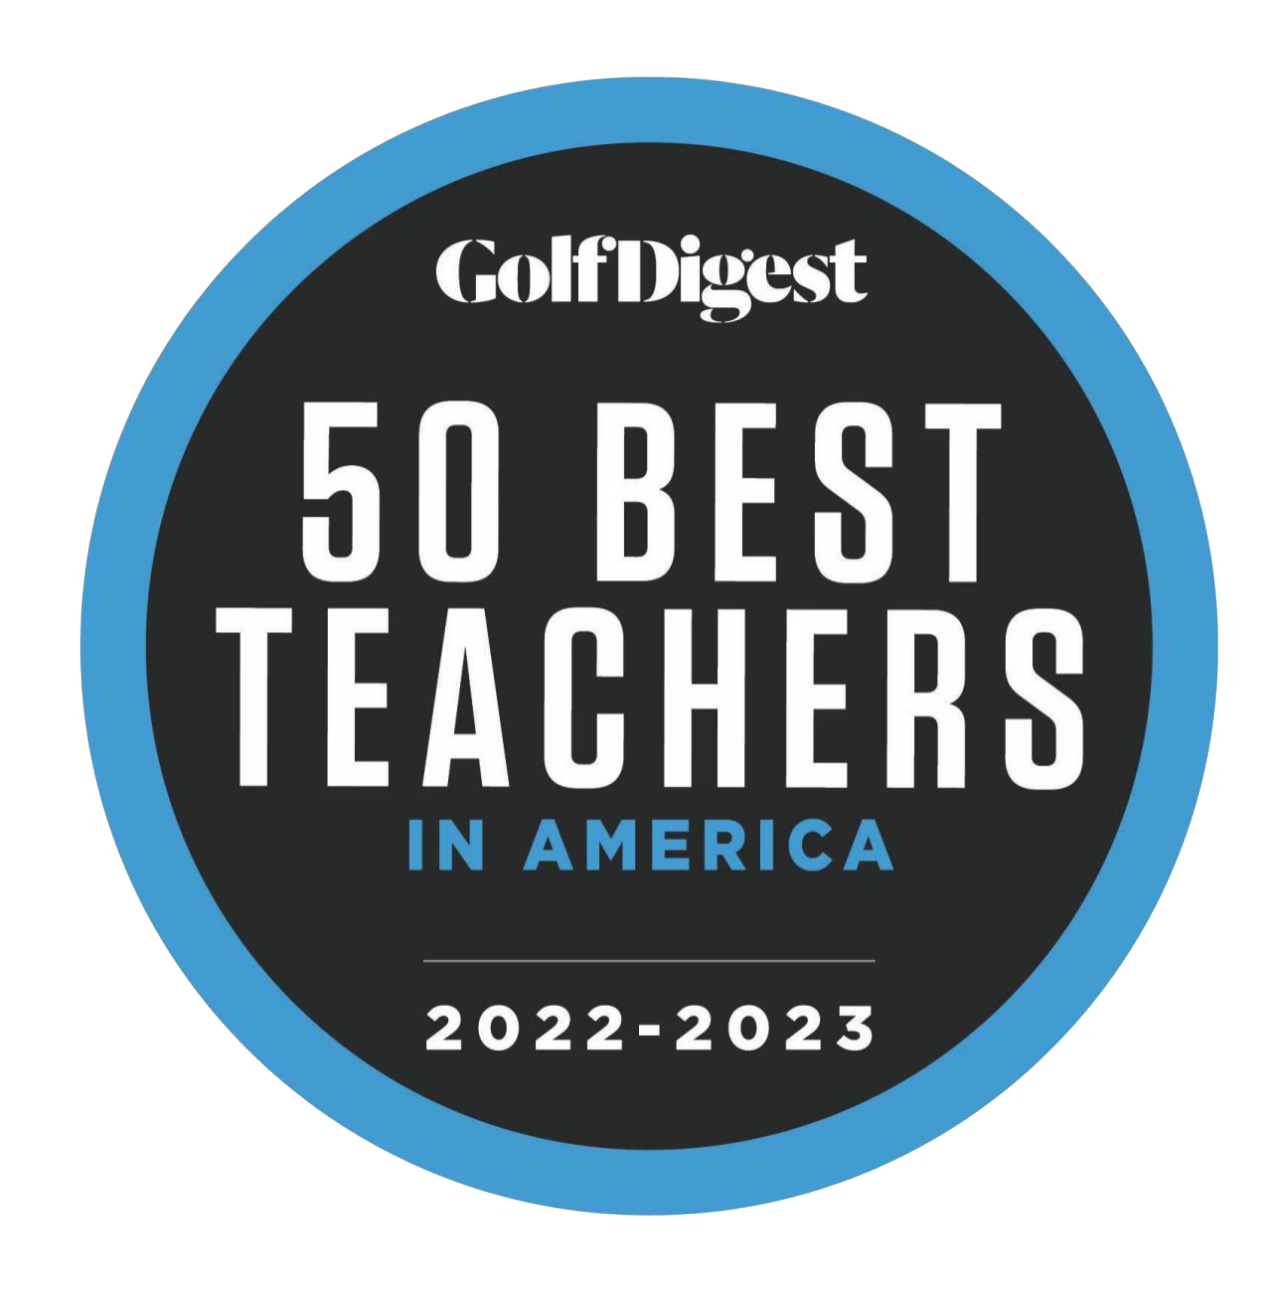 50 Best Golf Teachers in America